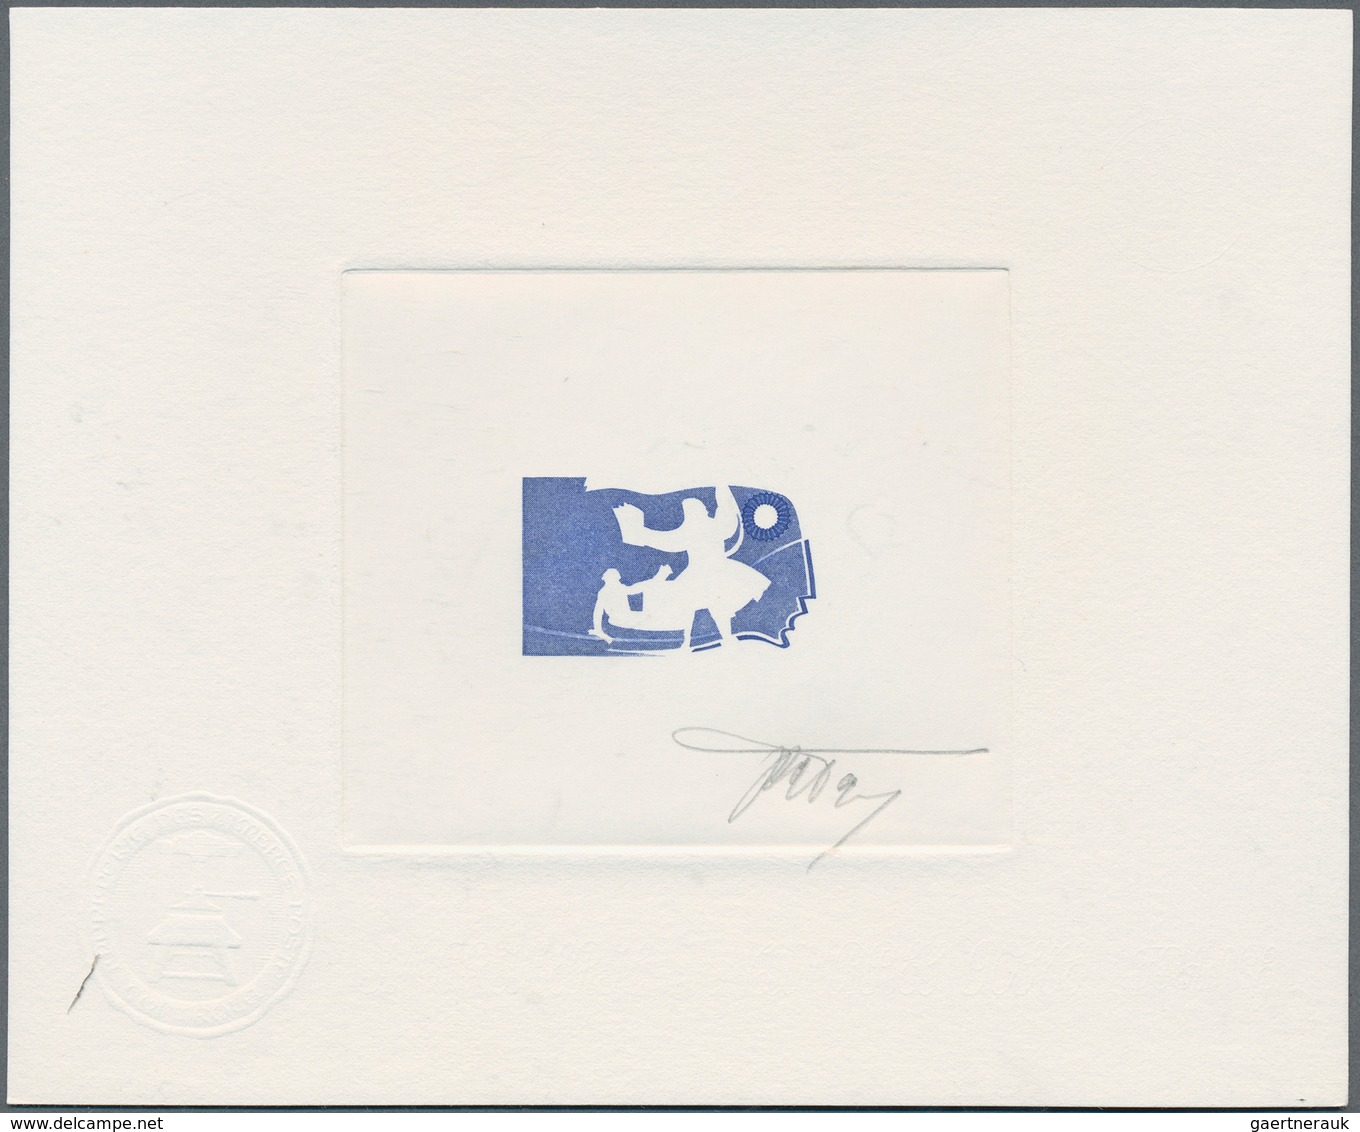 13901 Frankreich: 1989. Lot of 12 Épreuves d'artiste signée (including 6 negatives) for the complete REVOL